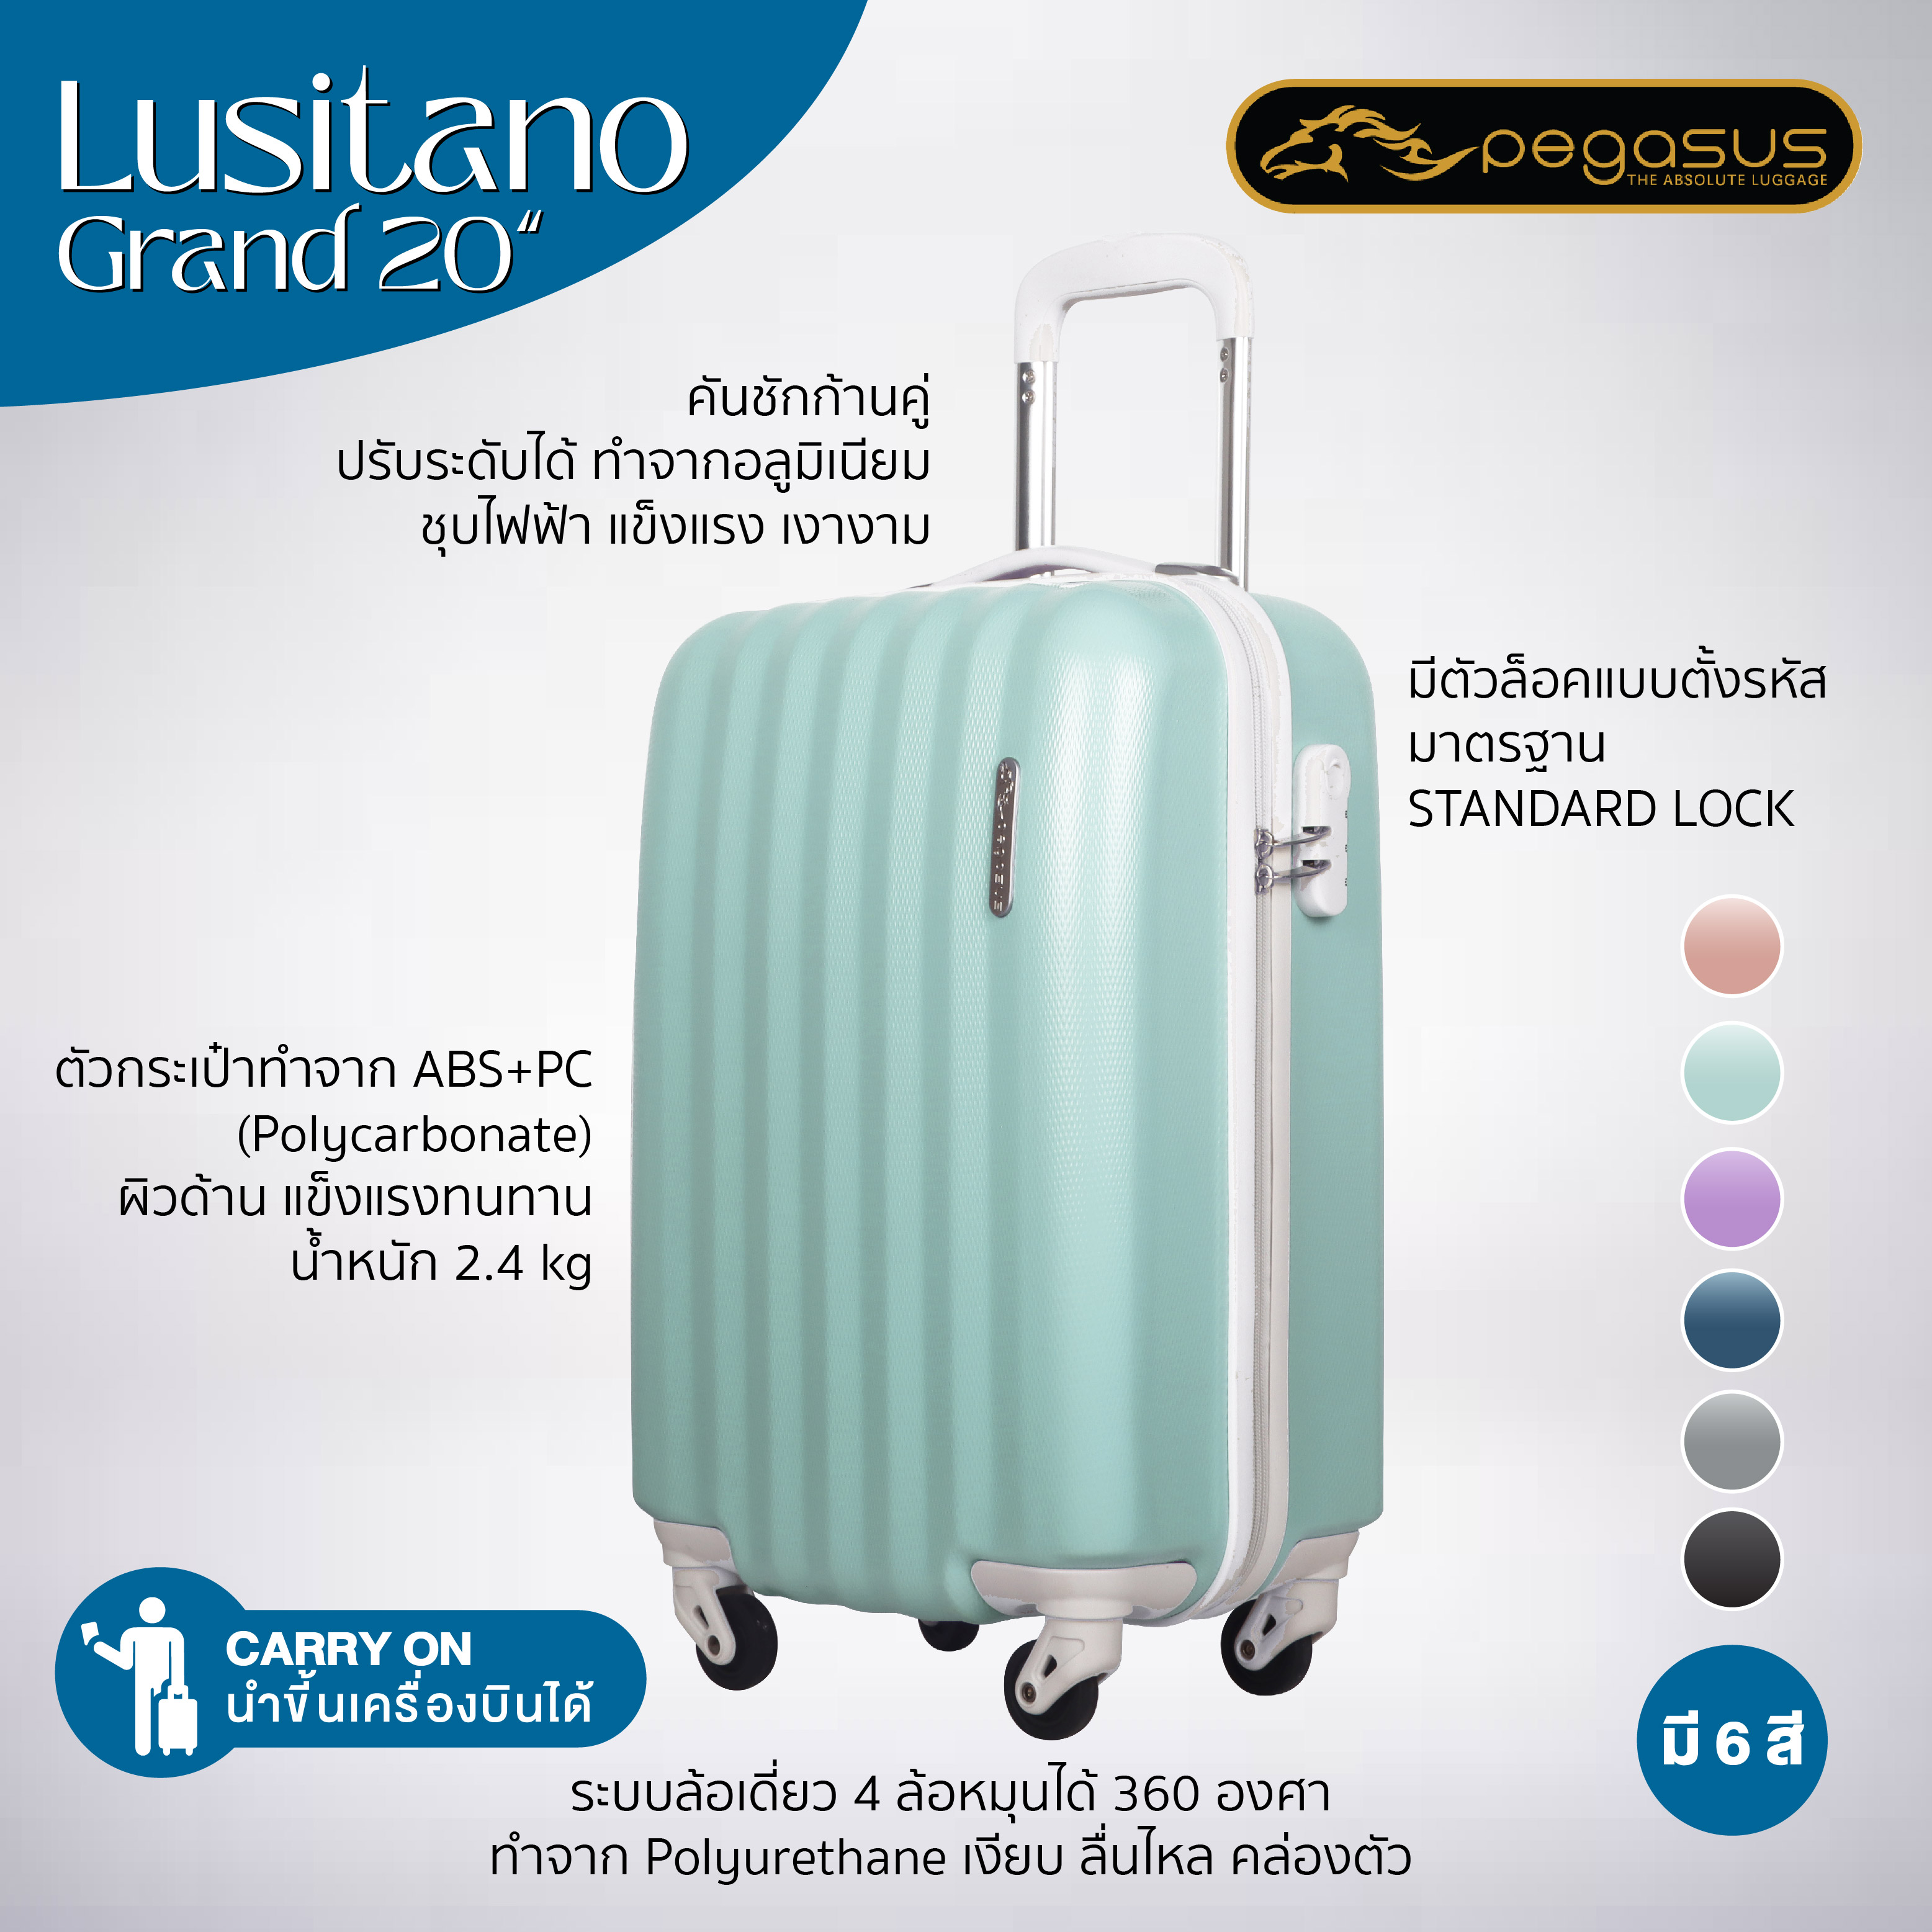 กระเป๋าเดินทาง 20 นิ้ว สีเขียวพาสเทล รุ่น Lusino Grand